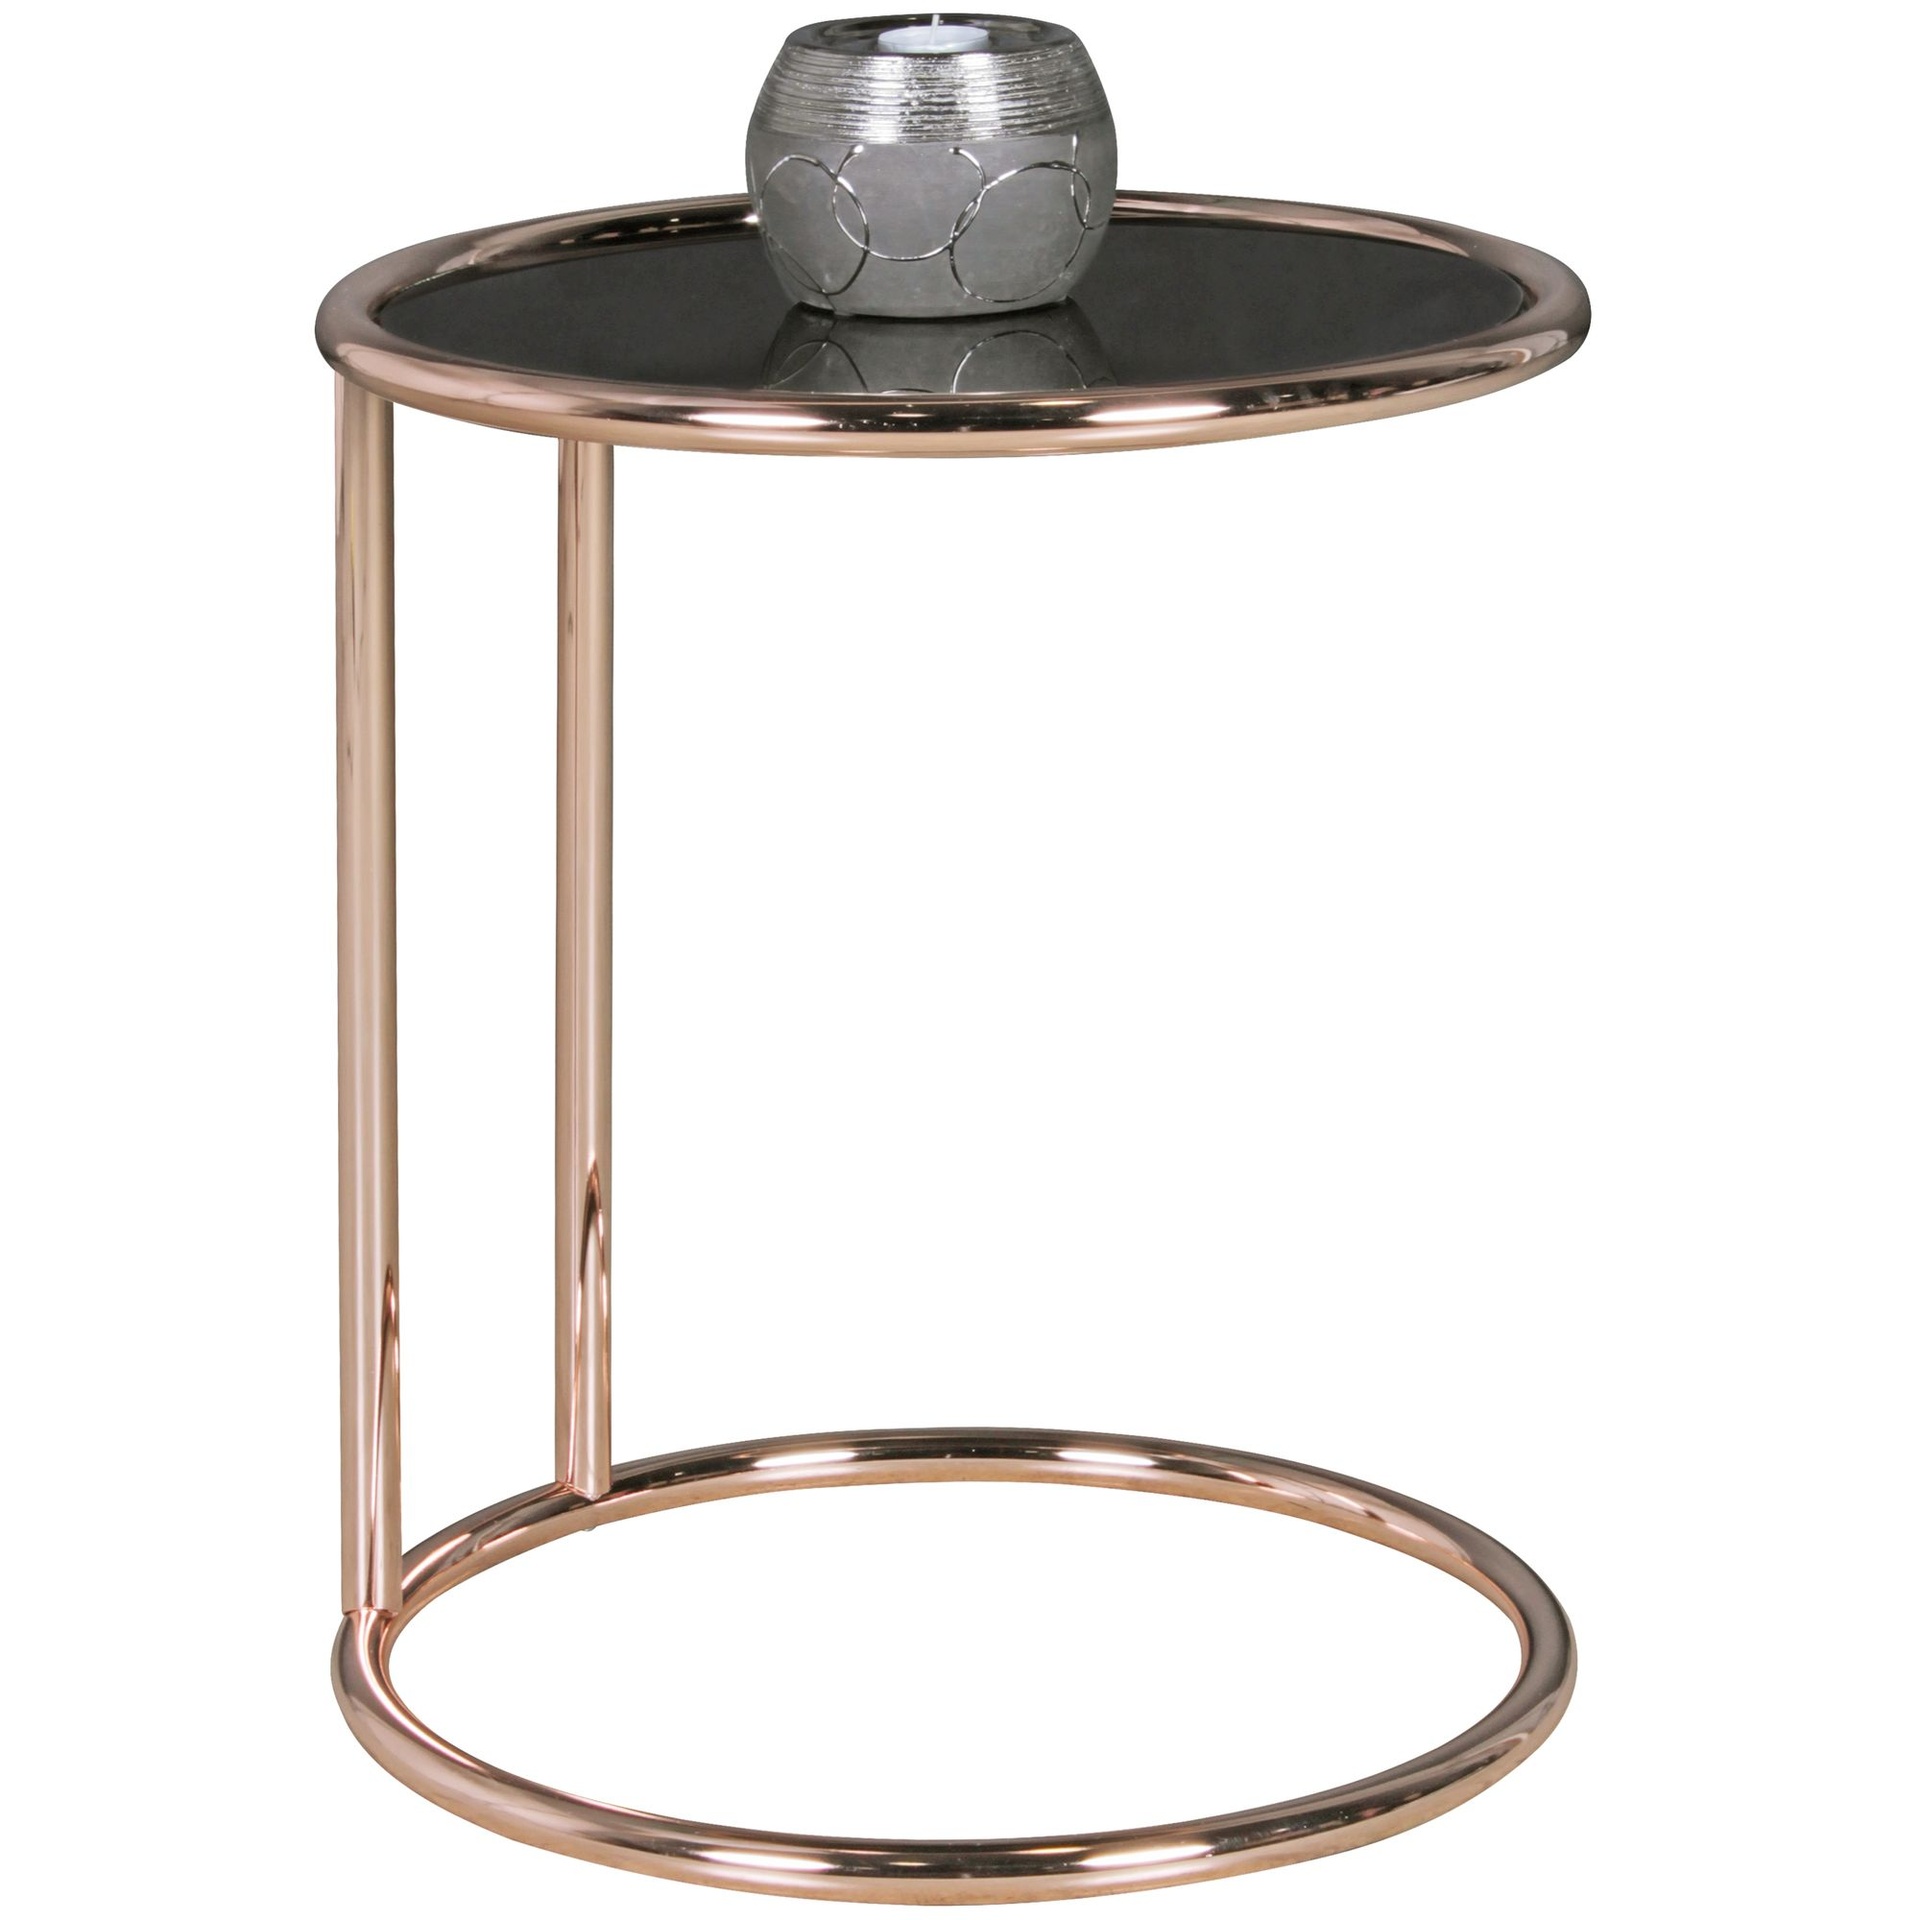 [A09784] Design table d'appoint métal verre ø 45 cm noir / cuivre, miroir, moderne, ronde